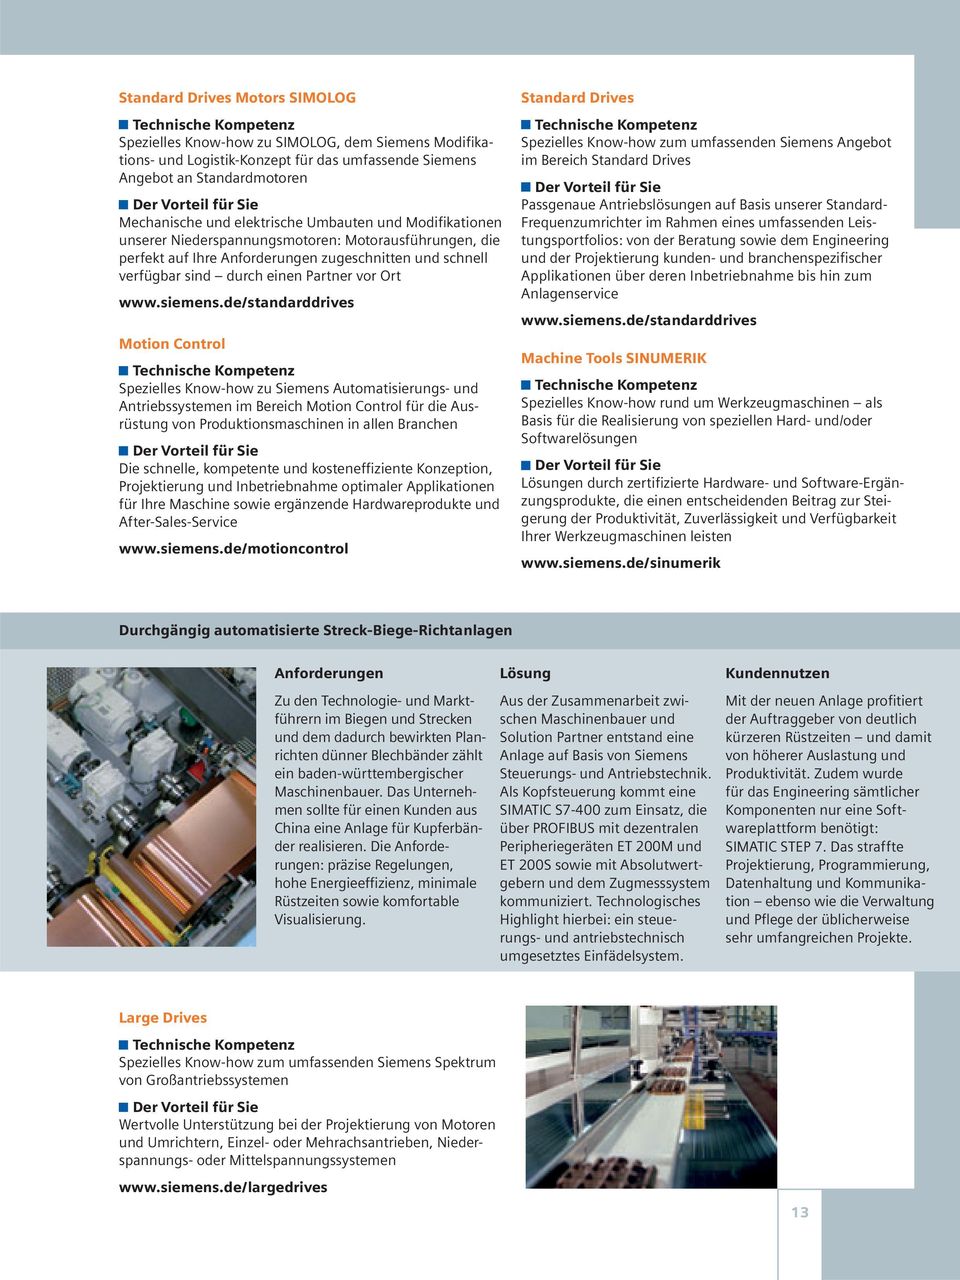 de/standarddrives Motion Control Spezielles Know-how zu Siemens Automatisierungs- und Antriebssystemen im Bereich Motion Control für die Ausrüstung von Produktionsmaschinen in allen Branchen Die